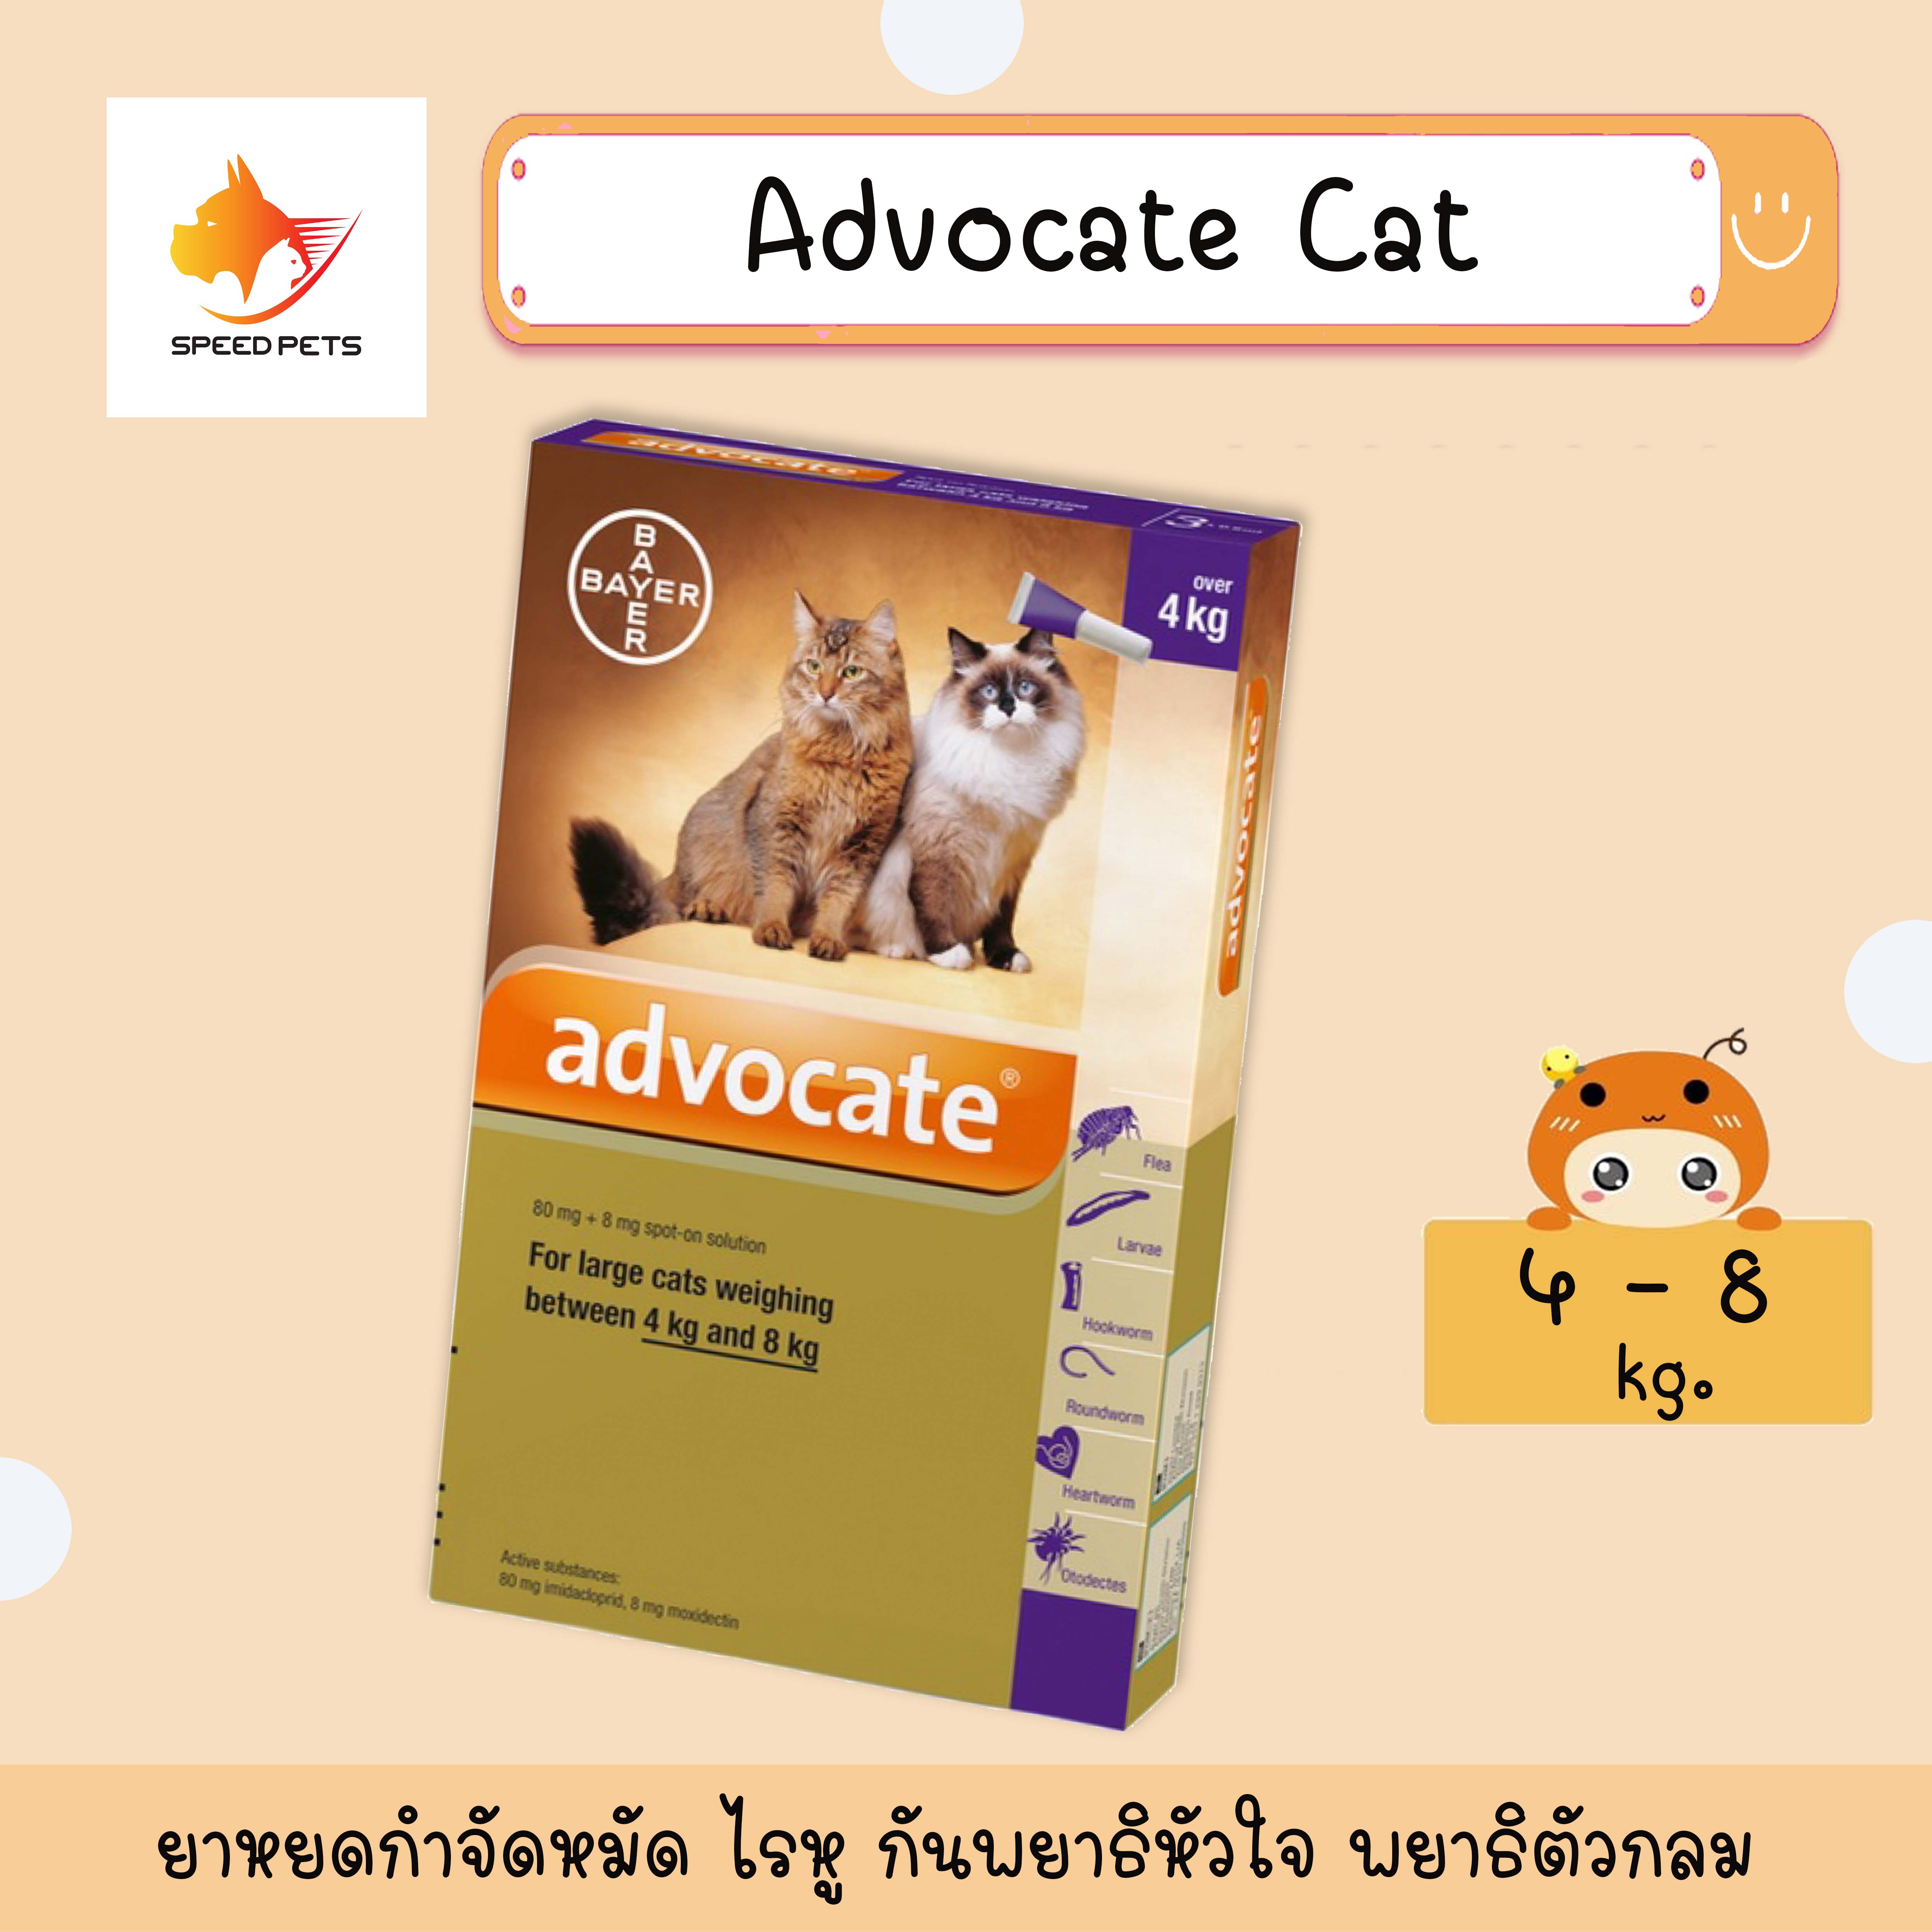 Advocate   Cat 4-8 kg แอทโวเคทแมว บรรจุ 3 หลอด จำนวน 1 กล่อง